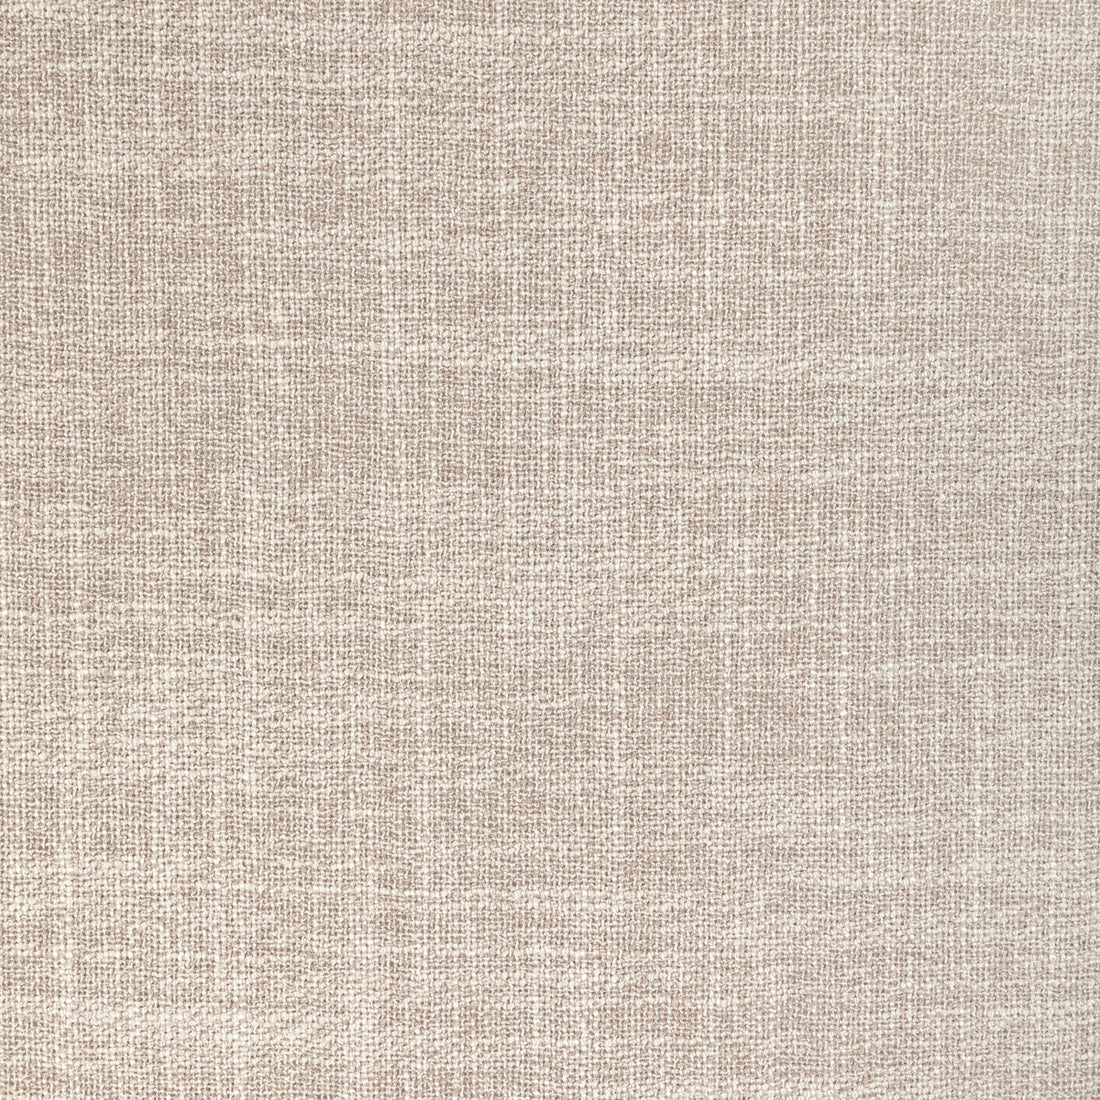 Kravet Basics fabric in 4930-16 color - pattern 4930.16.0 - by Kravet Basics